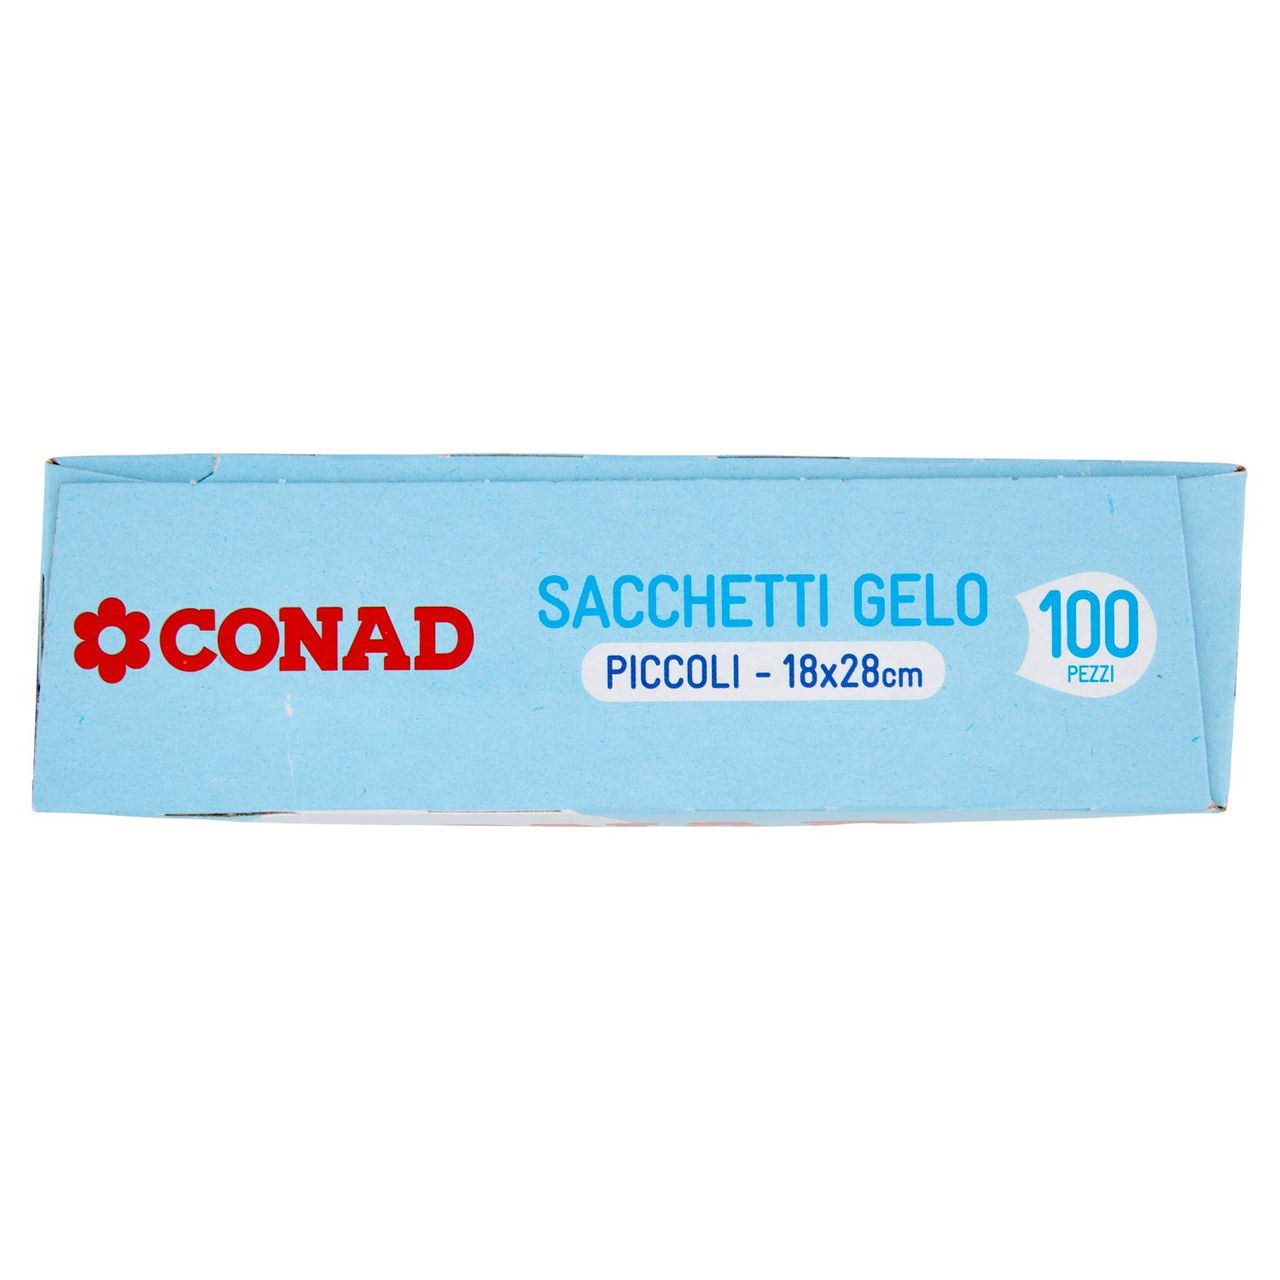 Sacchetti Gelo Piccoli 18x28cm Conad online